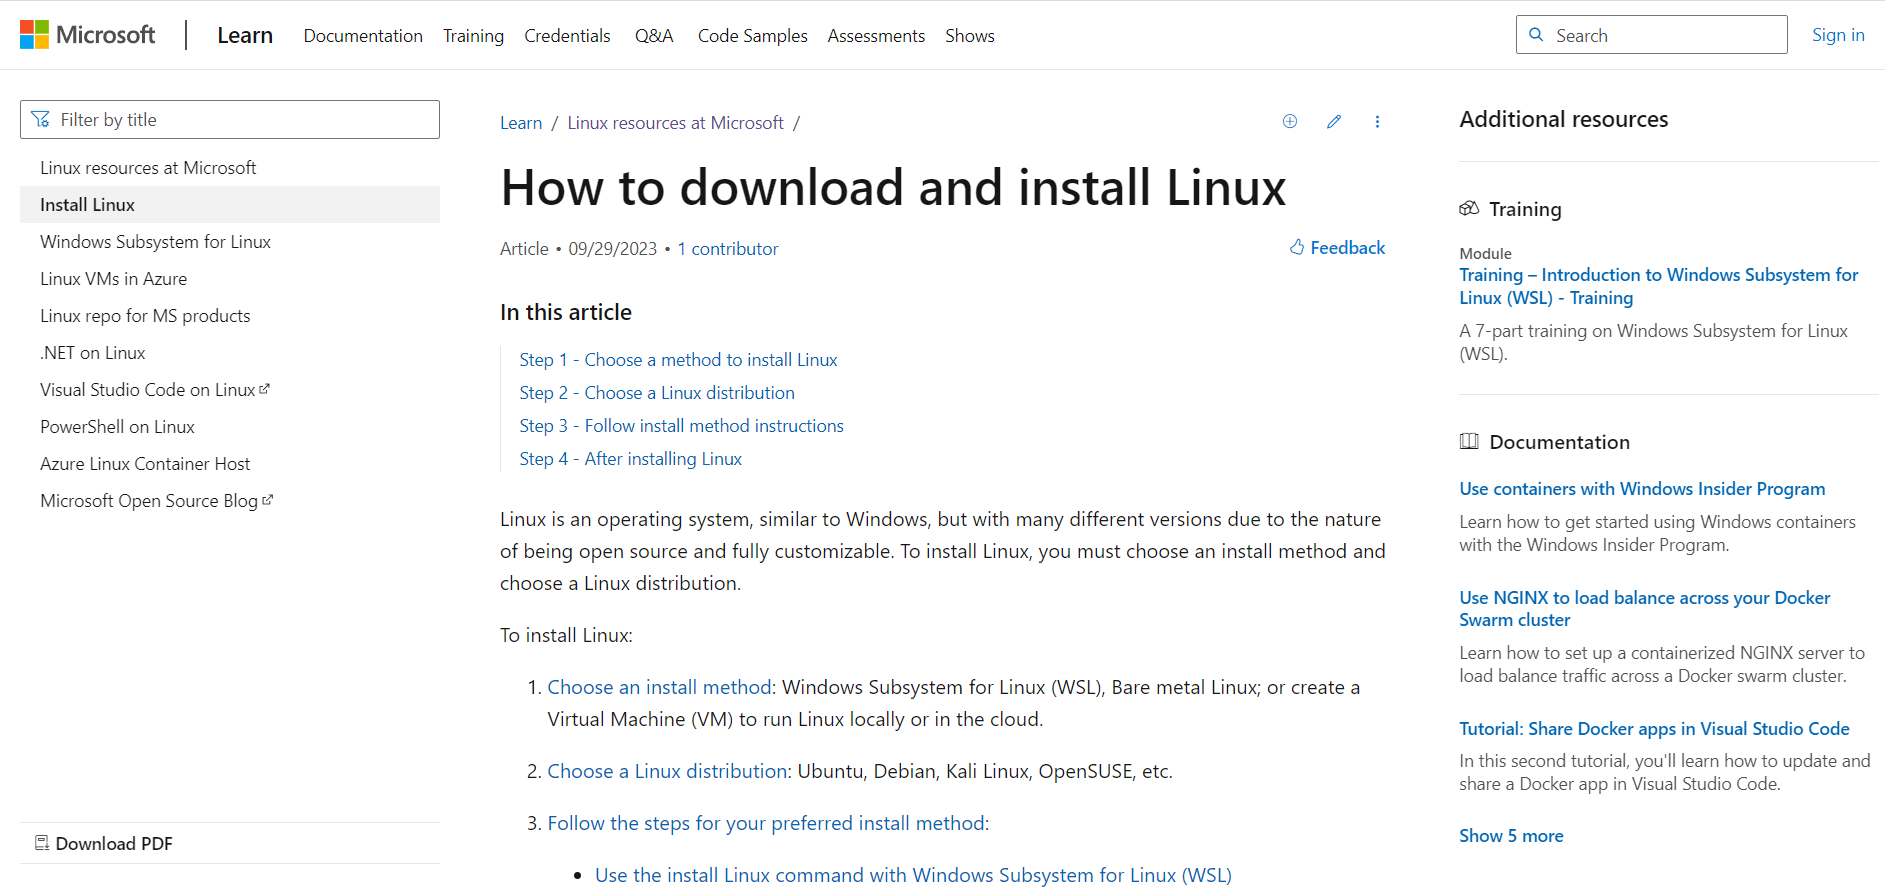 微软带你玩转 Linux —— 发布《如何下载和安装 Linux》教程